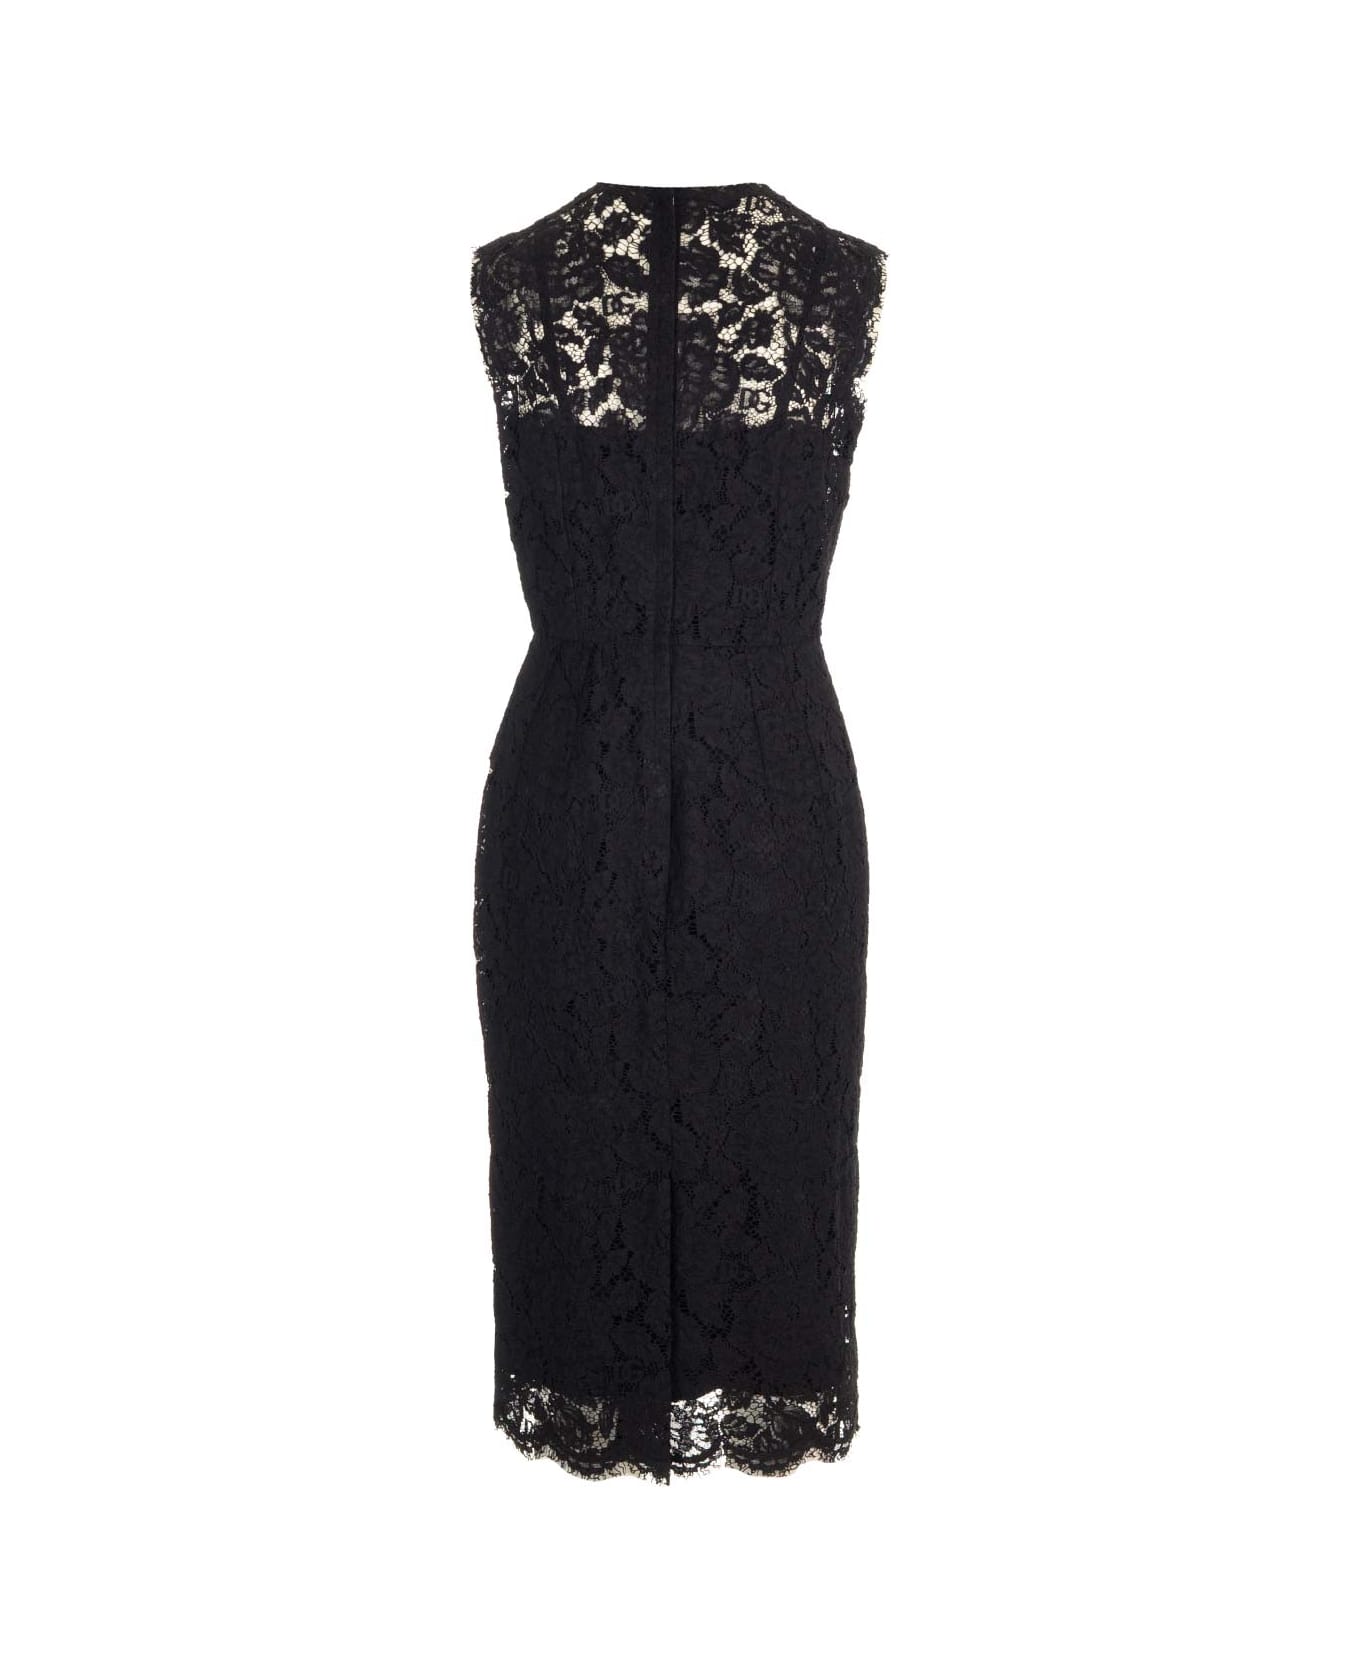 Dolce & Gabbana Lace Sheath Dress - Black